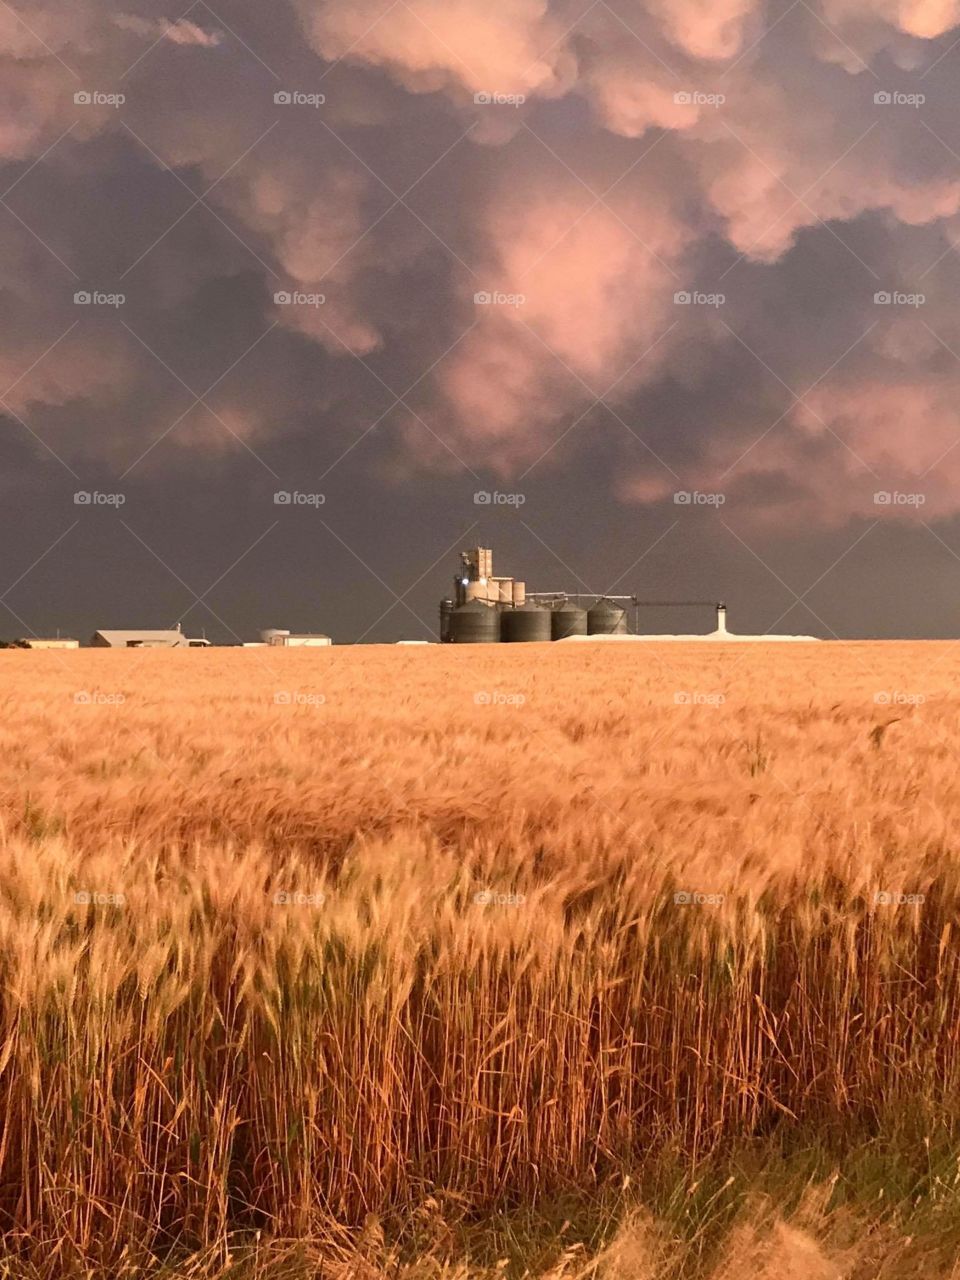 Kansas wheat fields blowing in the wind